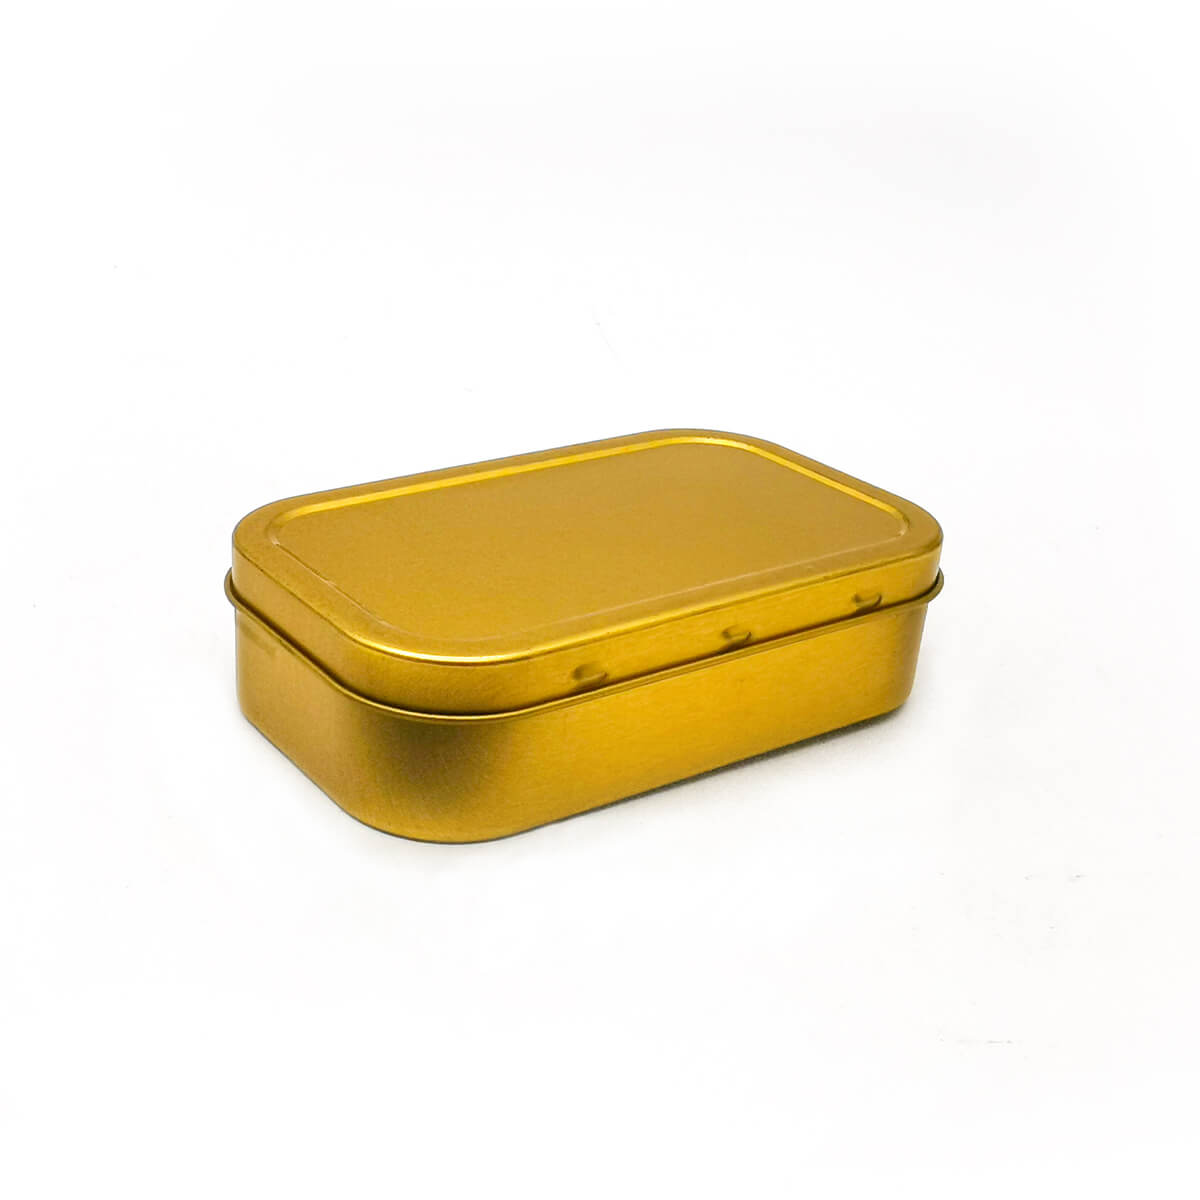 1oz (50ml) Герметичный золотой и серебряный цвет табак жестяная коробка